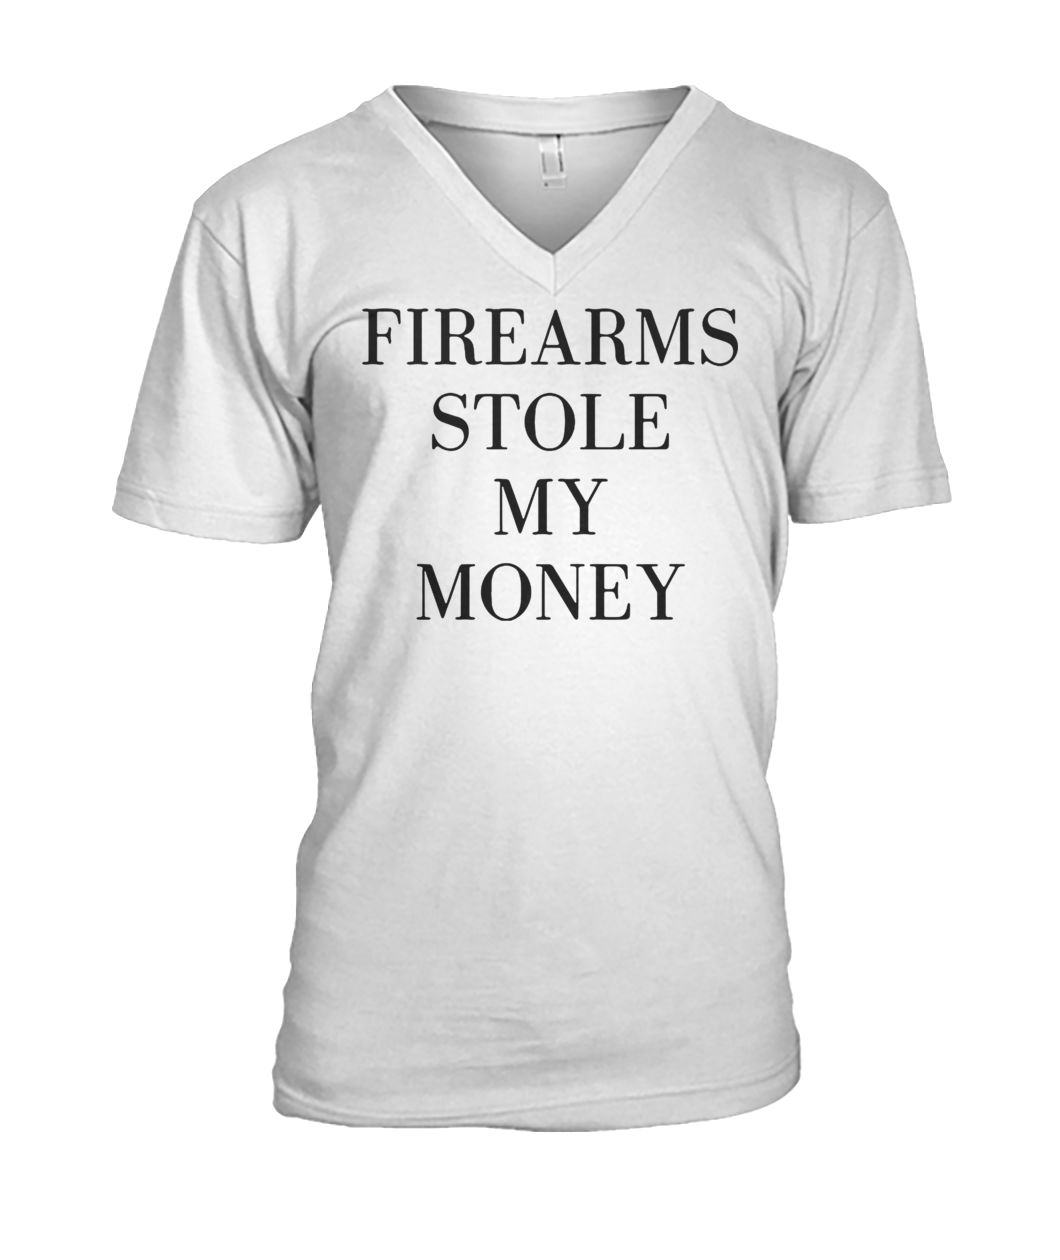 Firearms stole my money mens v-neck